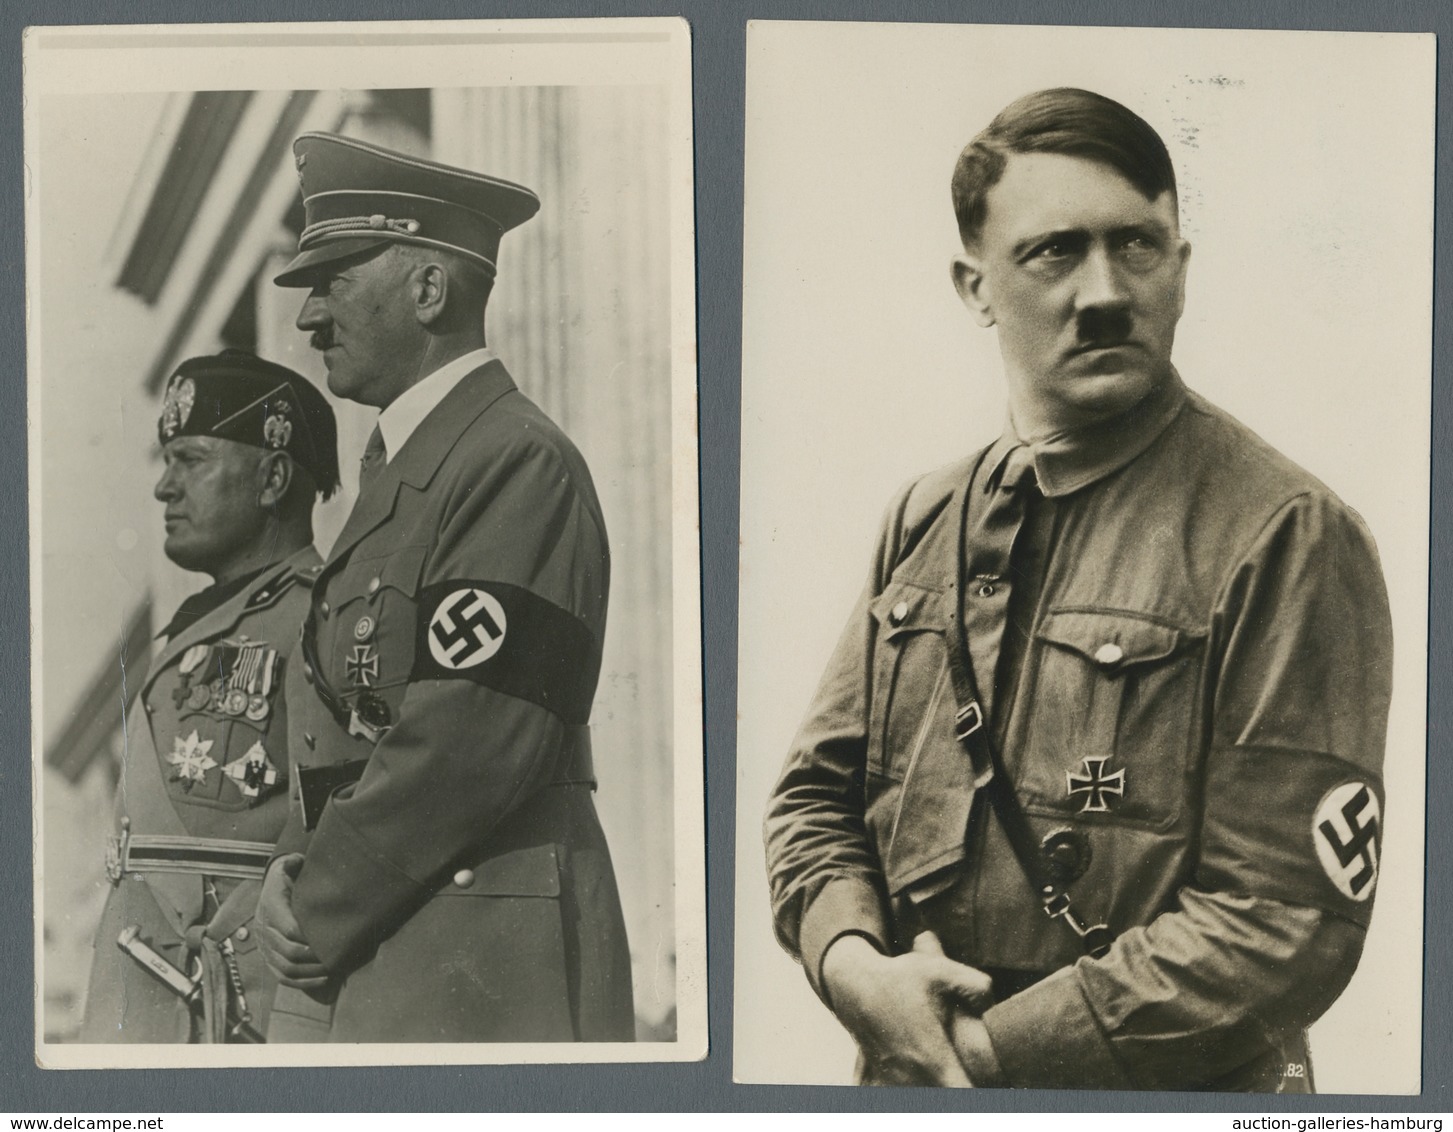 Deutsches Reich: 1903-1943, Partie von über 100 Belegen mit u.a. Ganzsachen, Propagandakarten des 3.